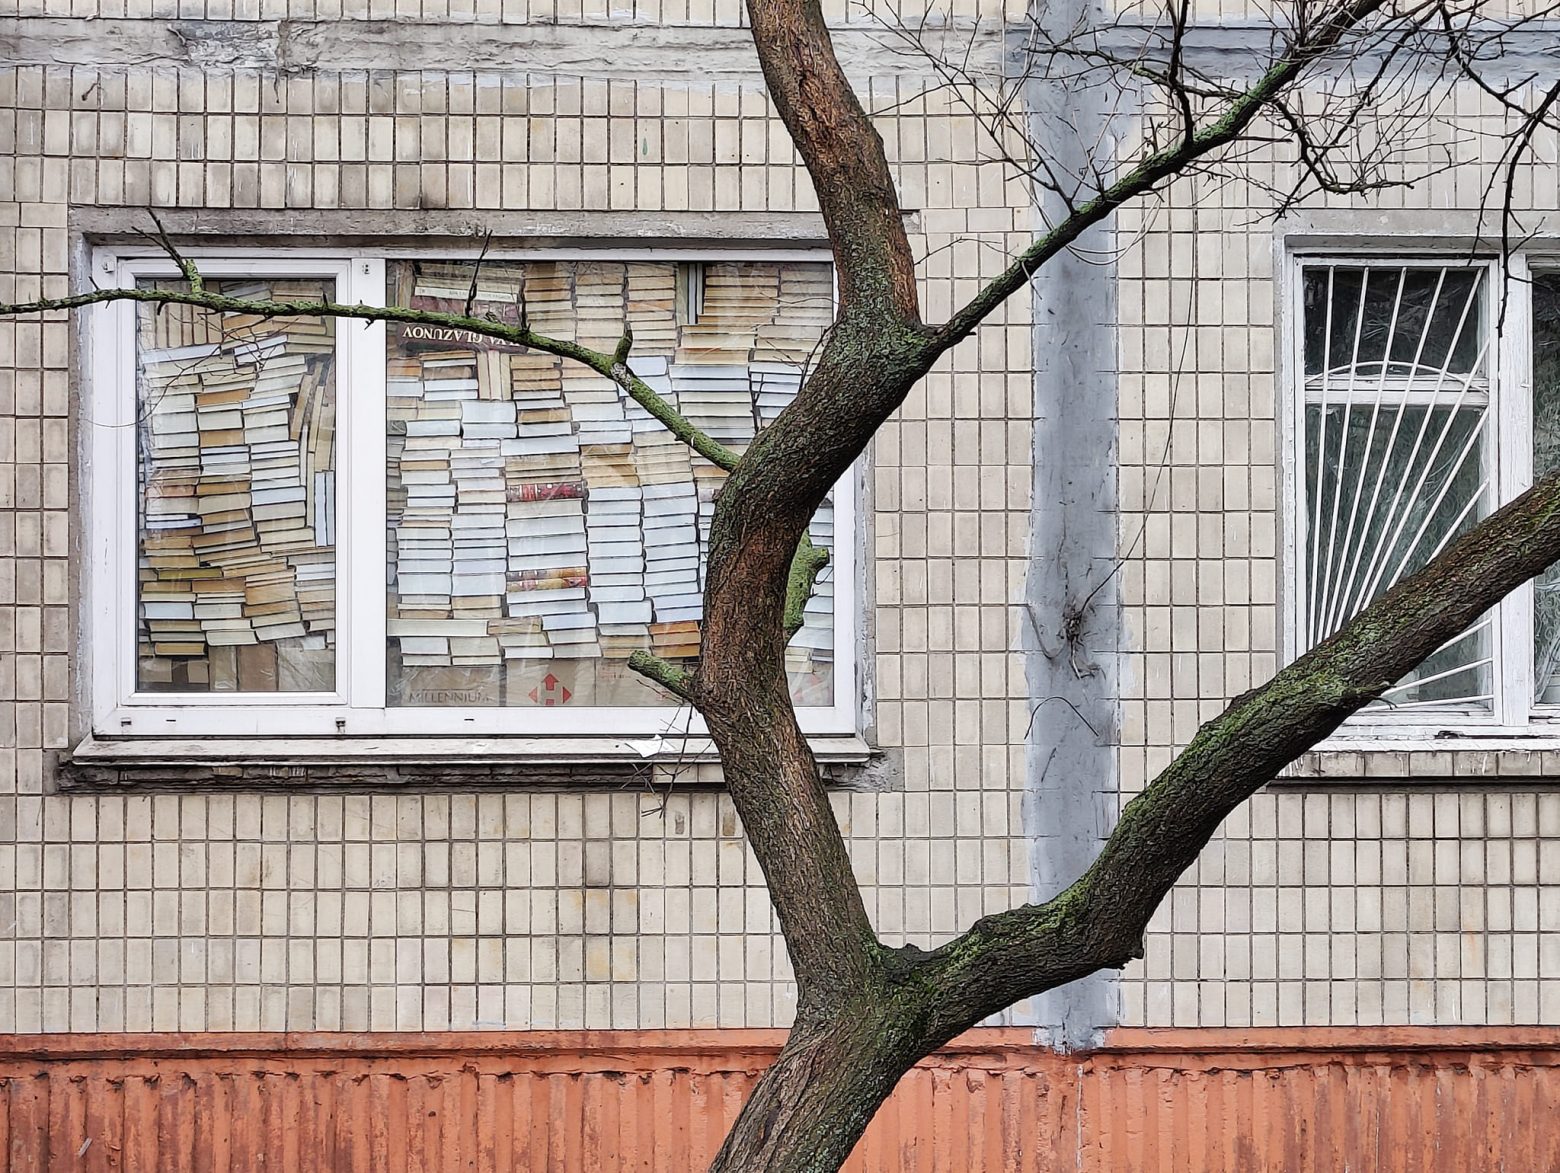 Πόλεμος στην Ουκρανία: Όταν τα βιβλία σε προστατεύουν... σώματι και πνεύματι